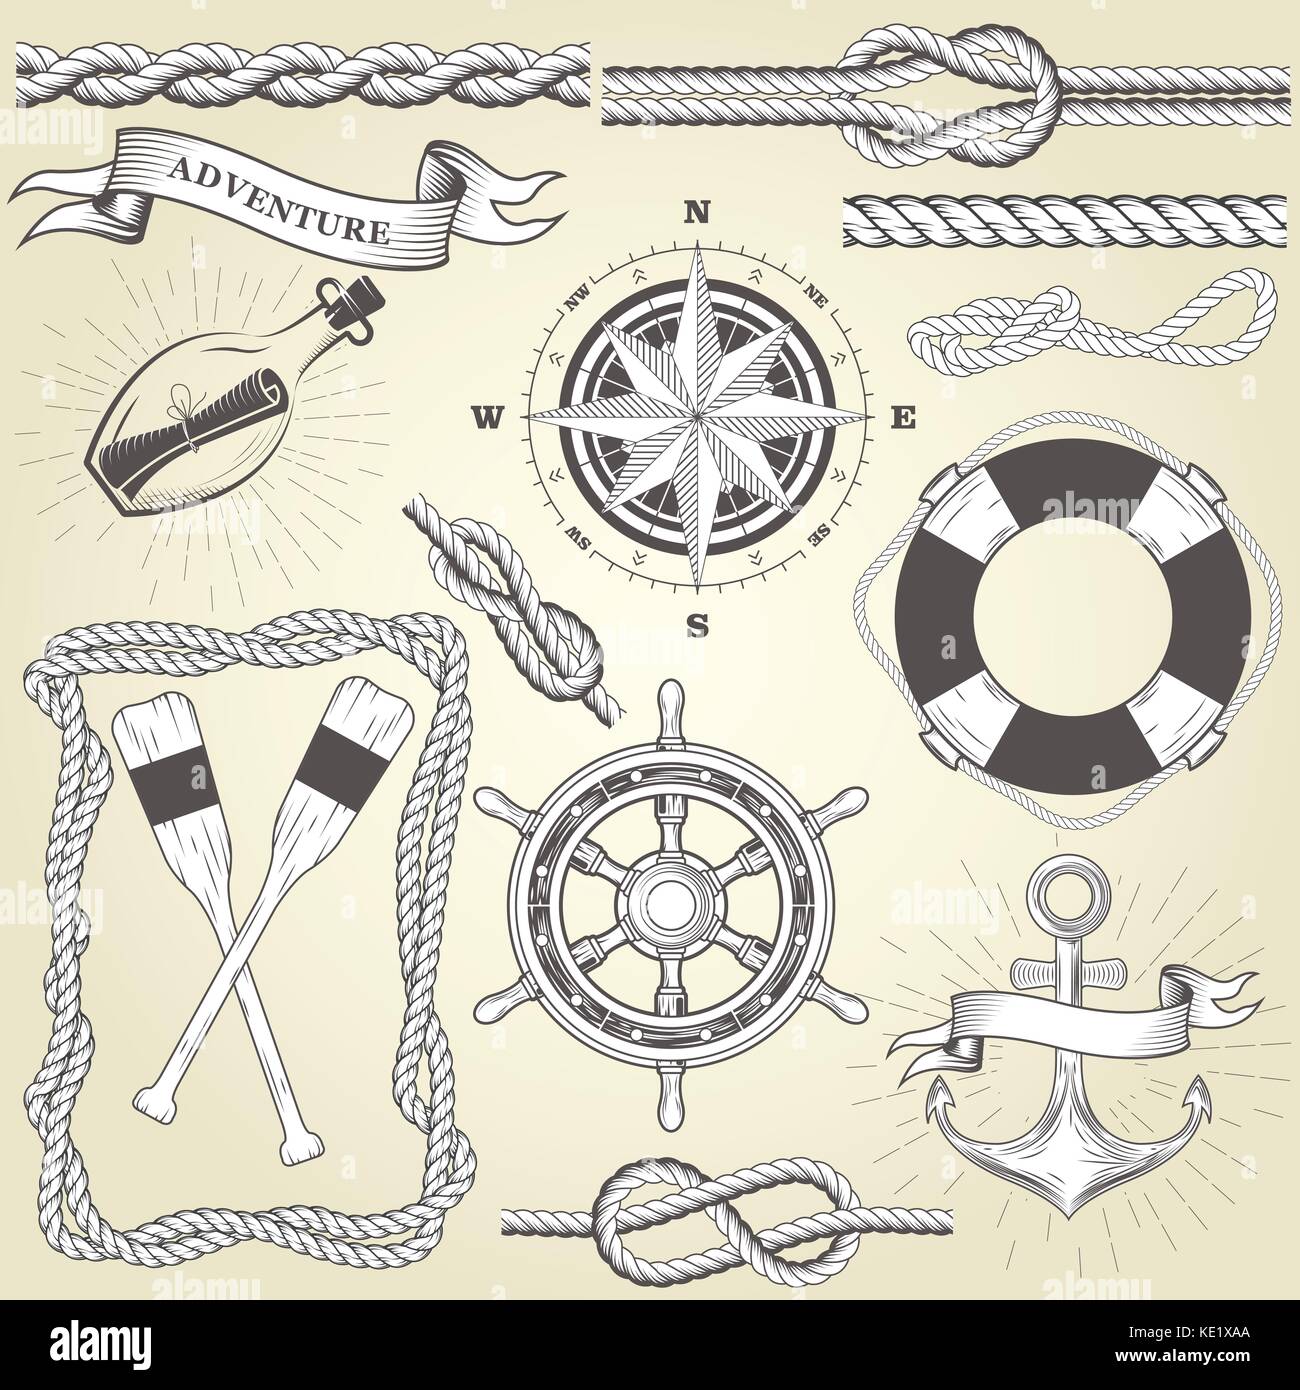 Vintage seafaring elements - steering wheel, oars, rope frame and